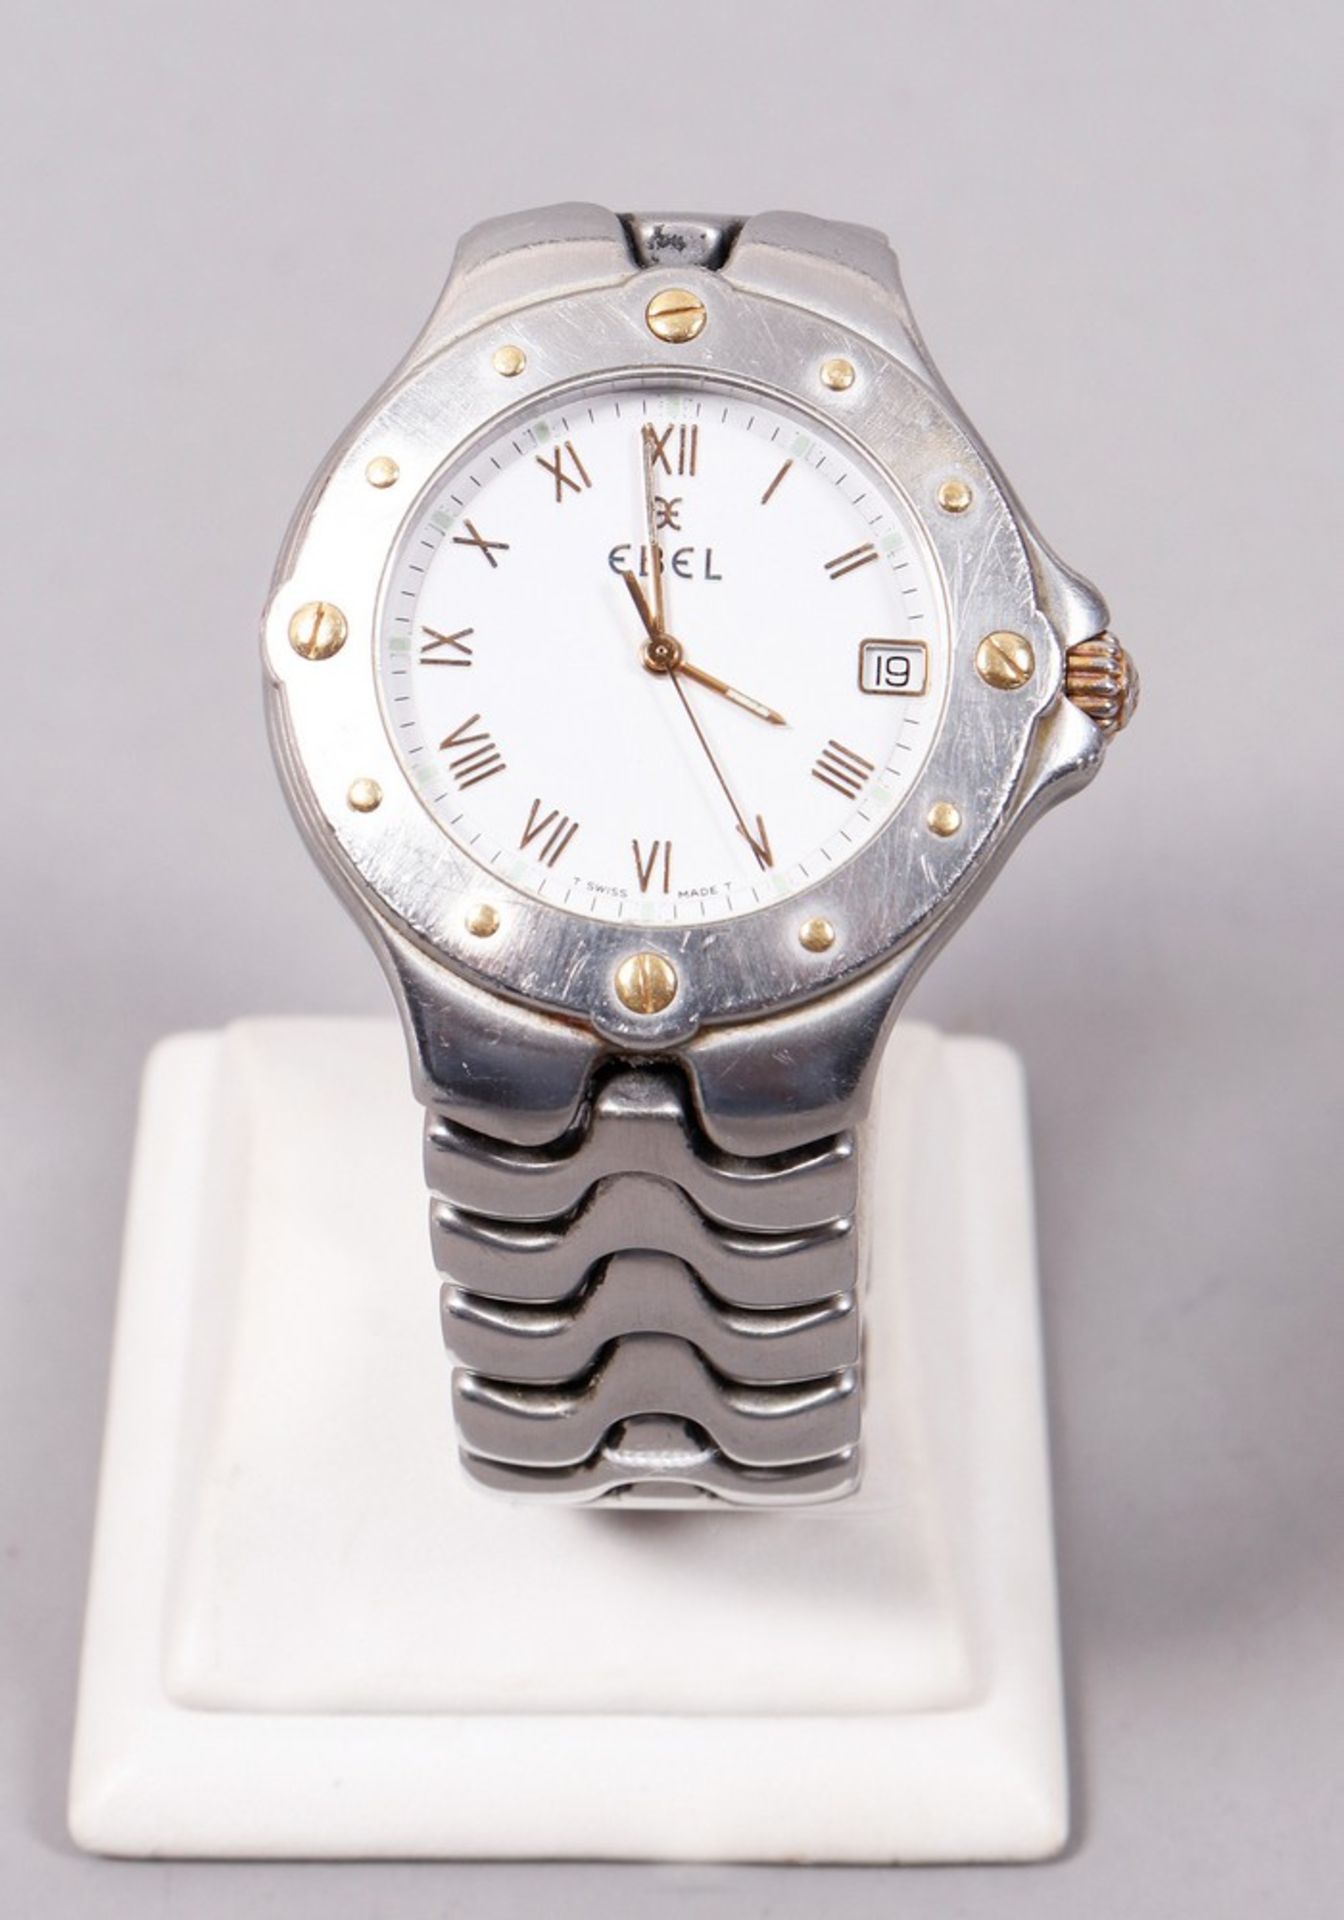 Ebel men's watch, Wave Sport model - Image 2 of 5